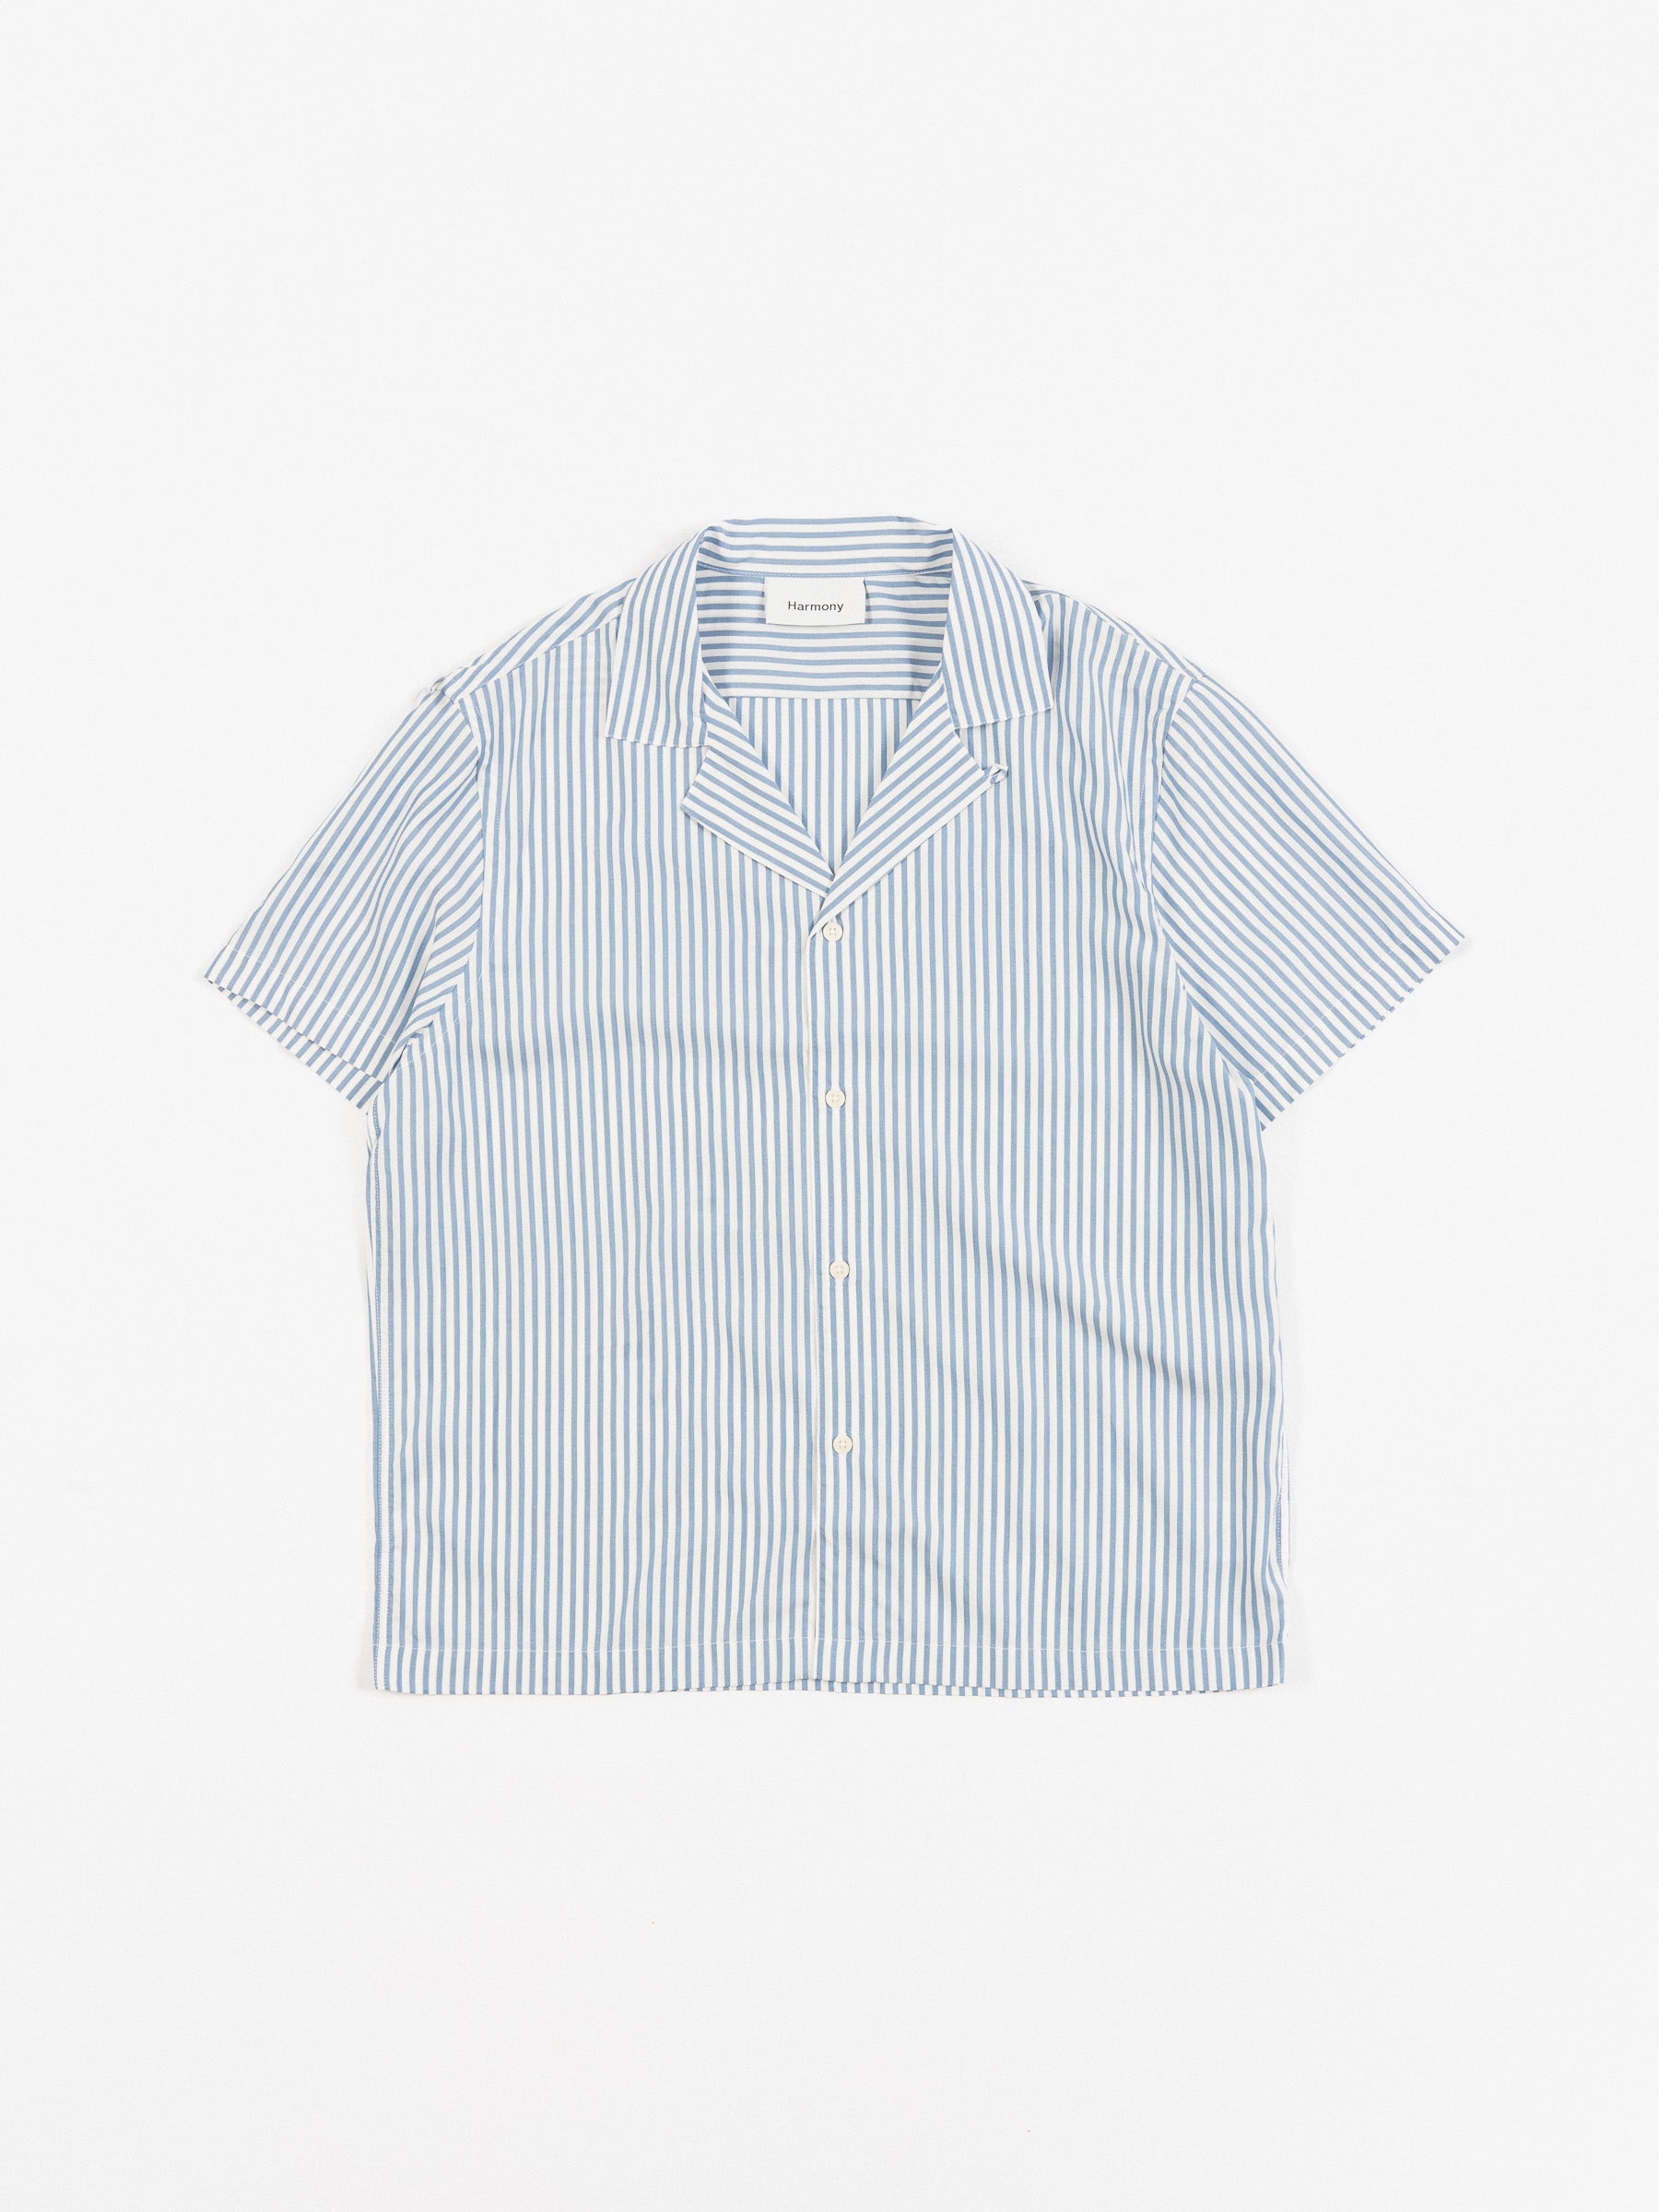 Christophe Striped Short Sleeve Shirt Blue/White